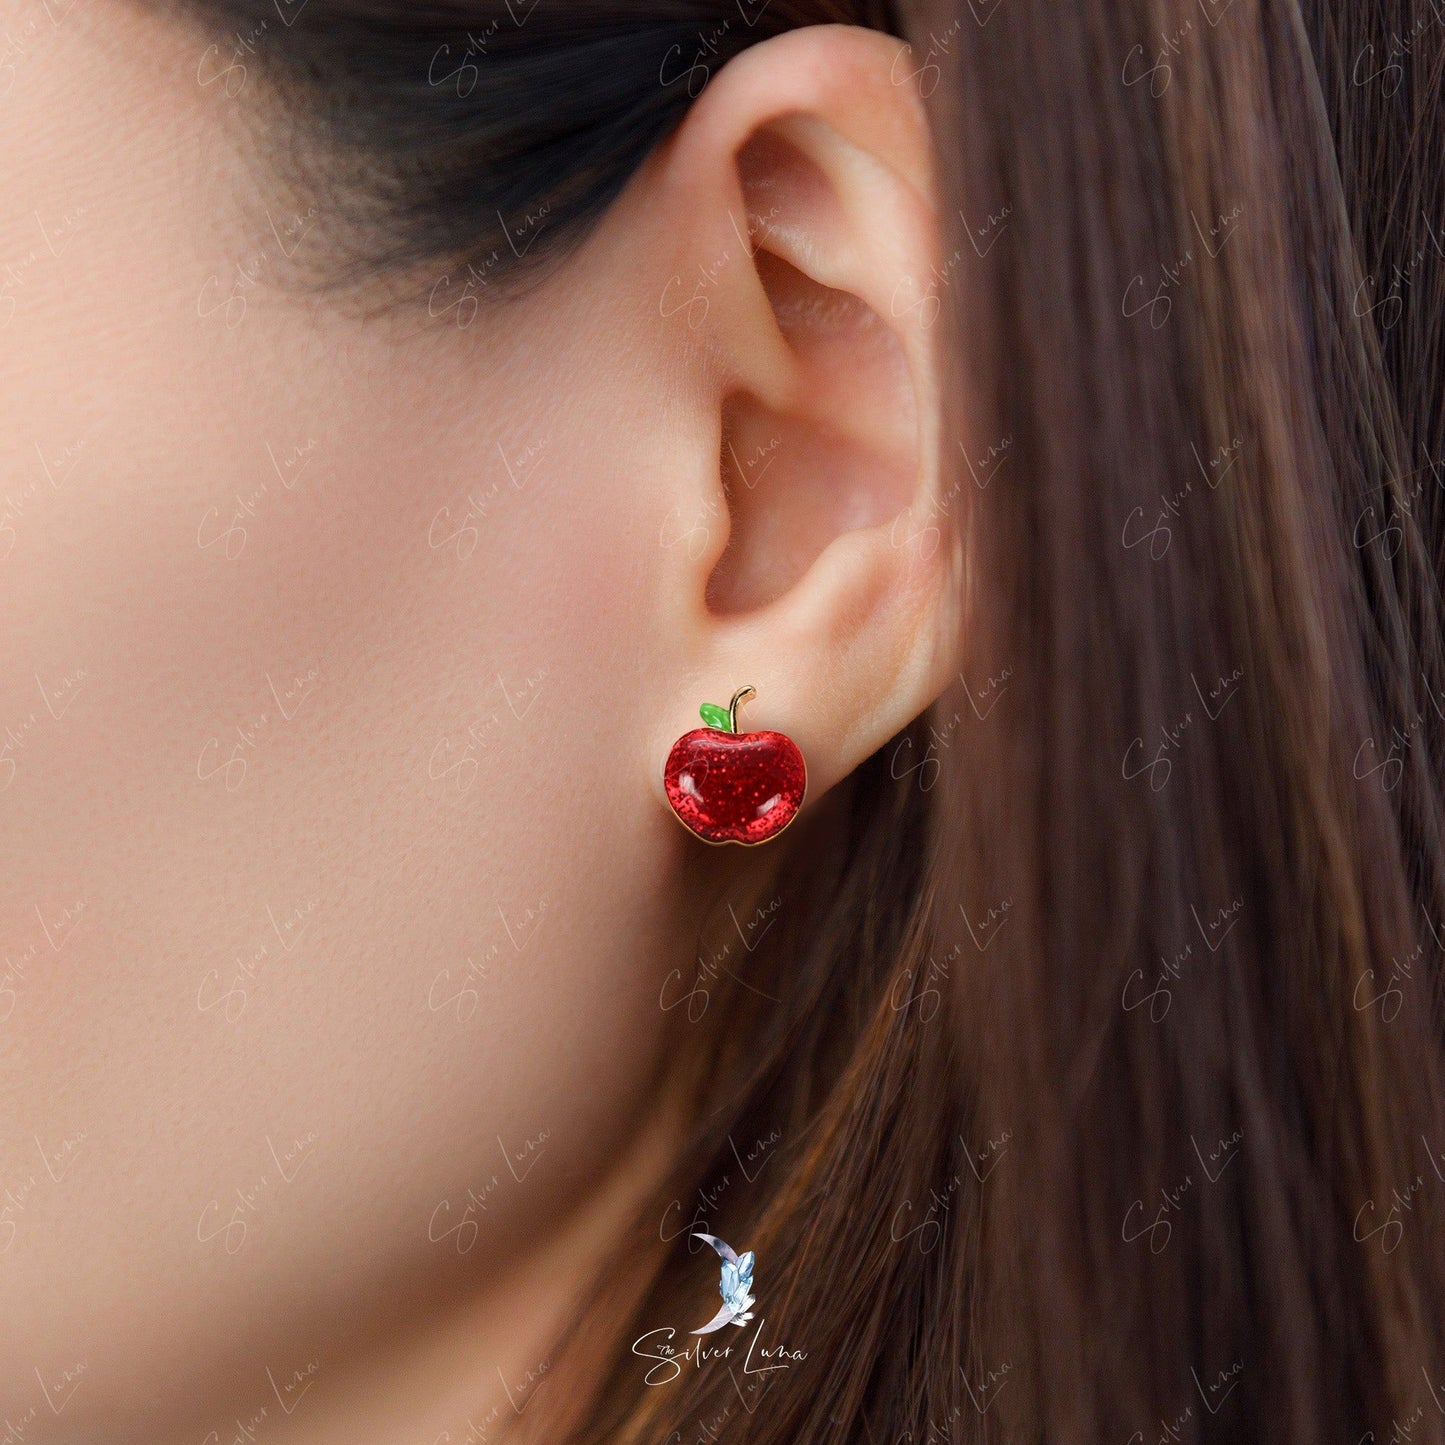 Red apple stud earrings